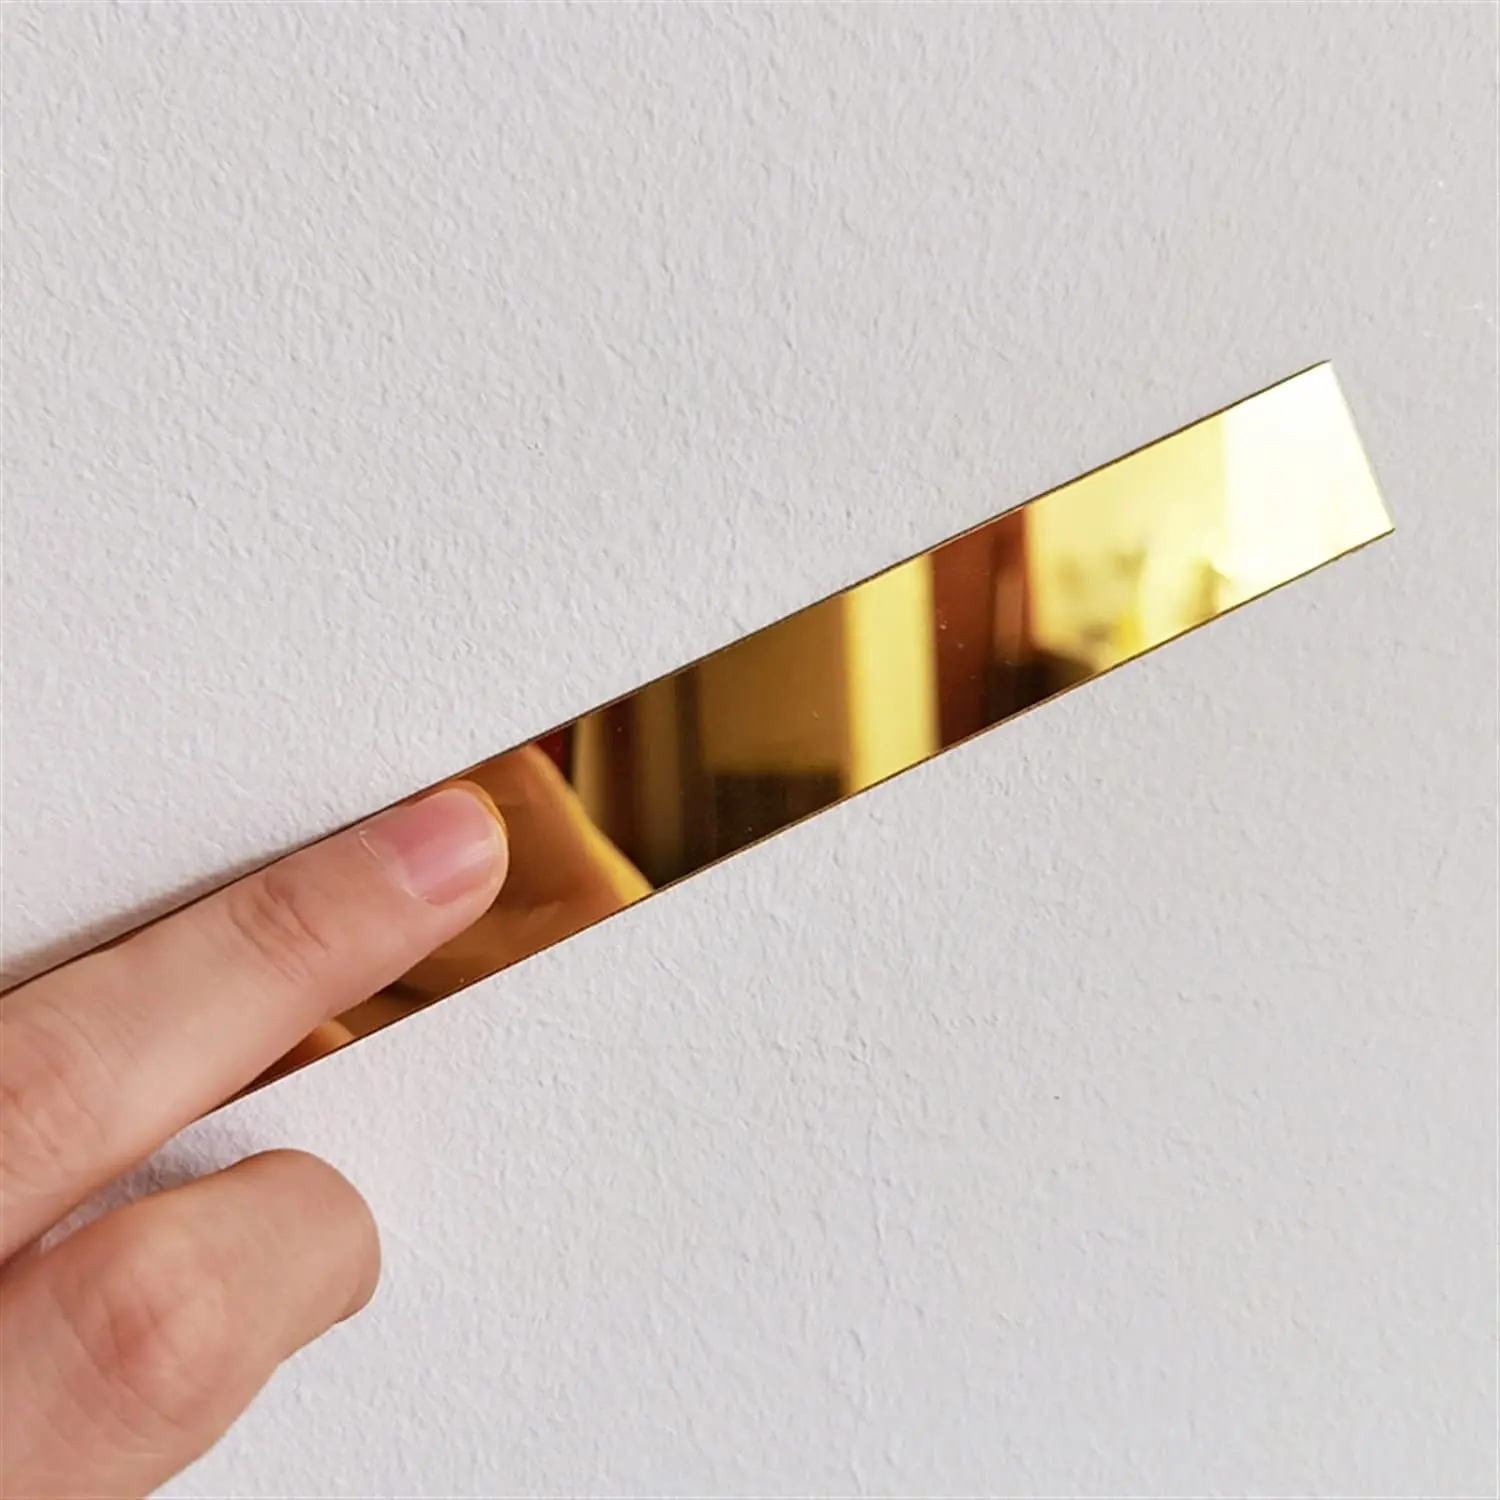 مقولبة وحواف للحائط, مقشر وعصا معدنية ذهبية تشبه المرآة لتقشير الأثاث في السقف وإطارها بمرآة